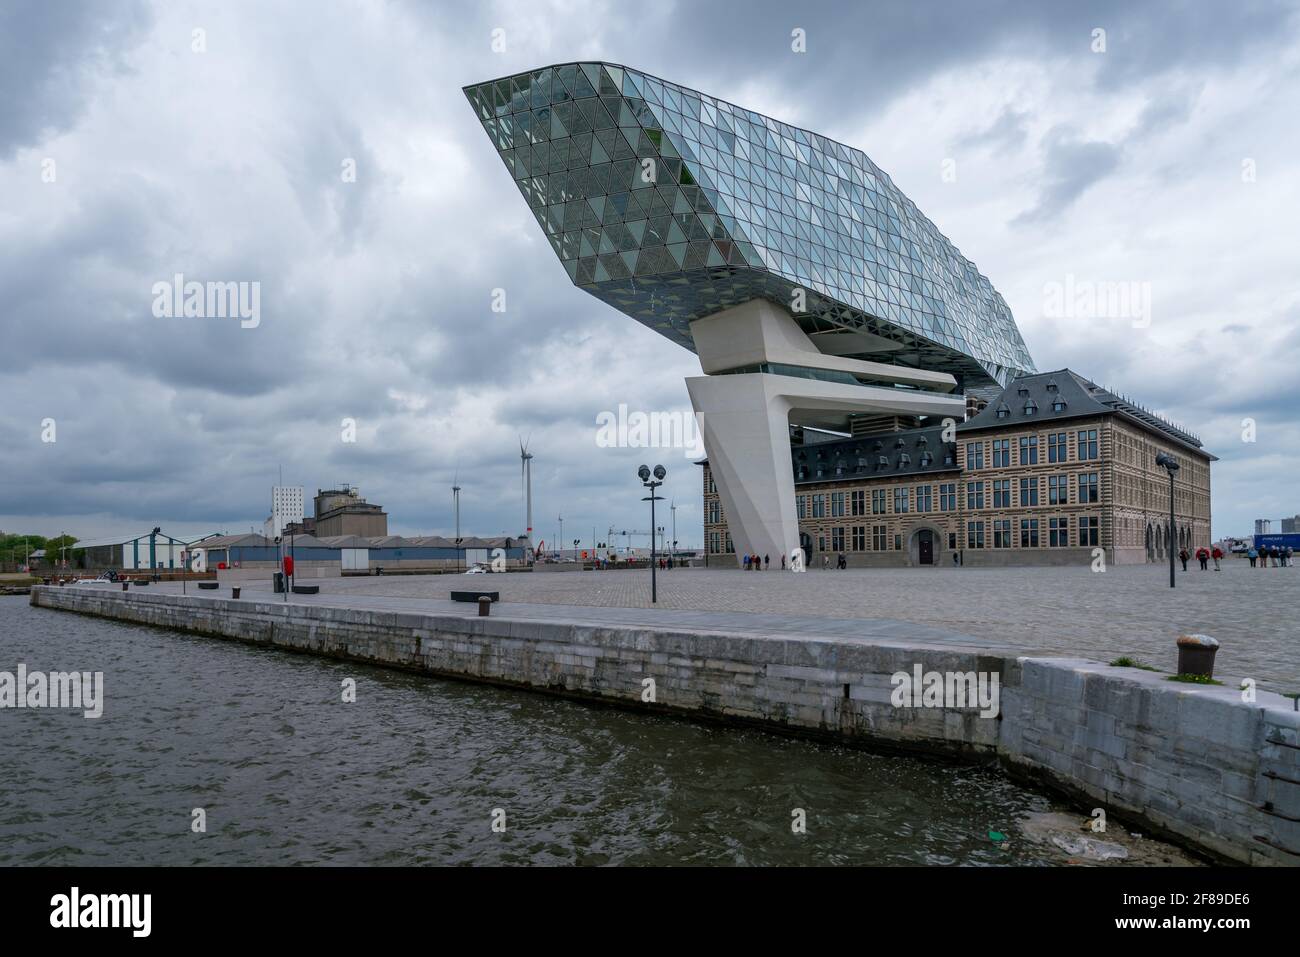 Anversa, Belgio - 04.29.2018: Edificio moderno dell'autorità portuale in una giornata nuvolosa e piovosa. Famosa architettura del Belgio. Foto Stock